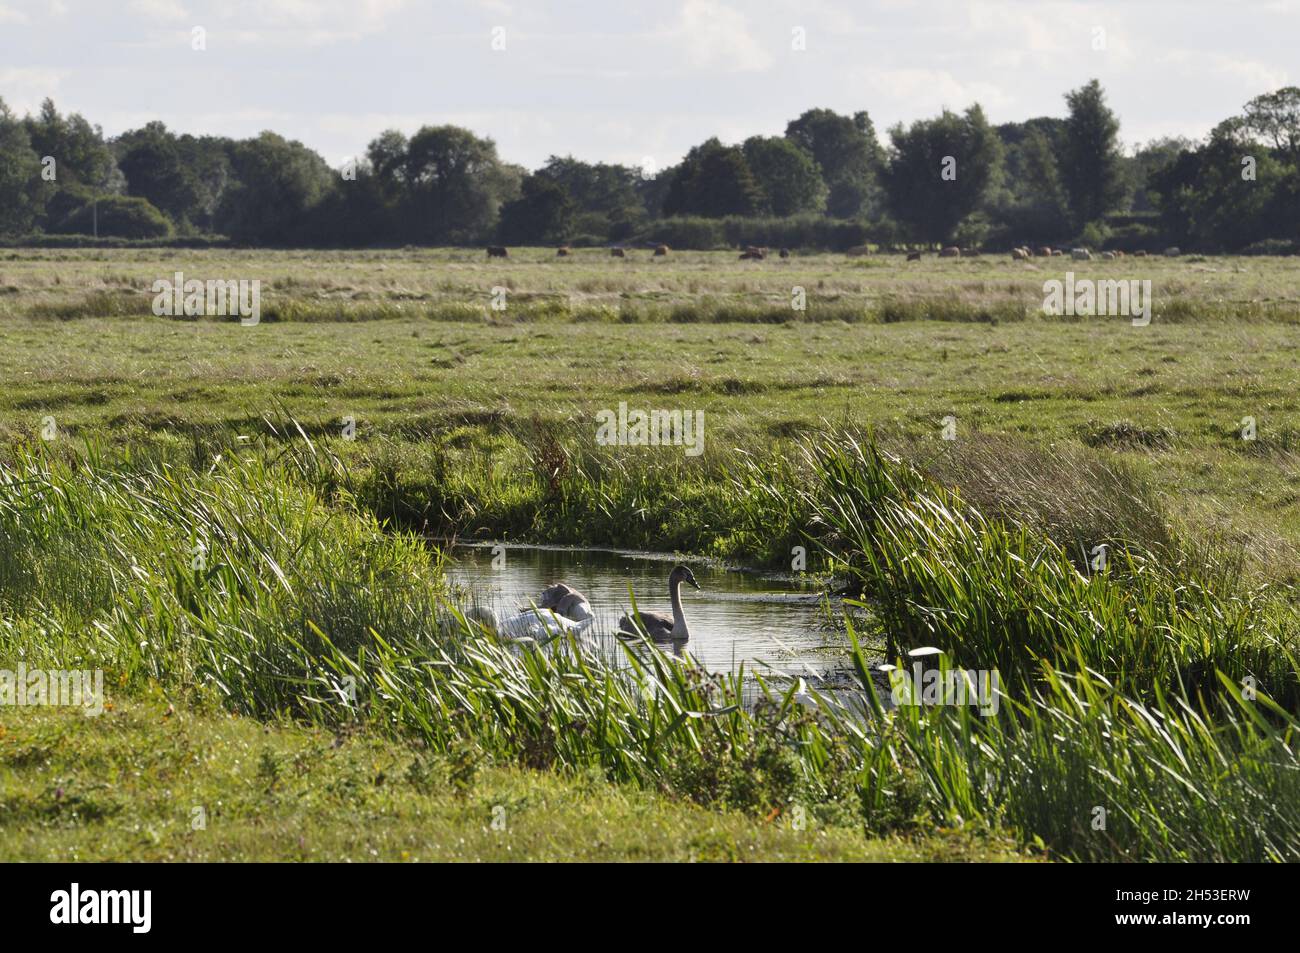 On Halvergate marshes, Norfolk, England, UK. Stock Photo